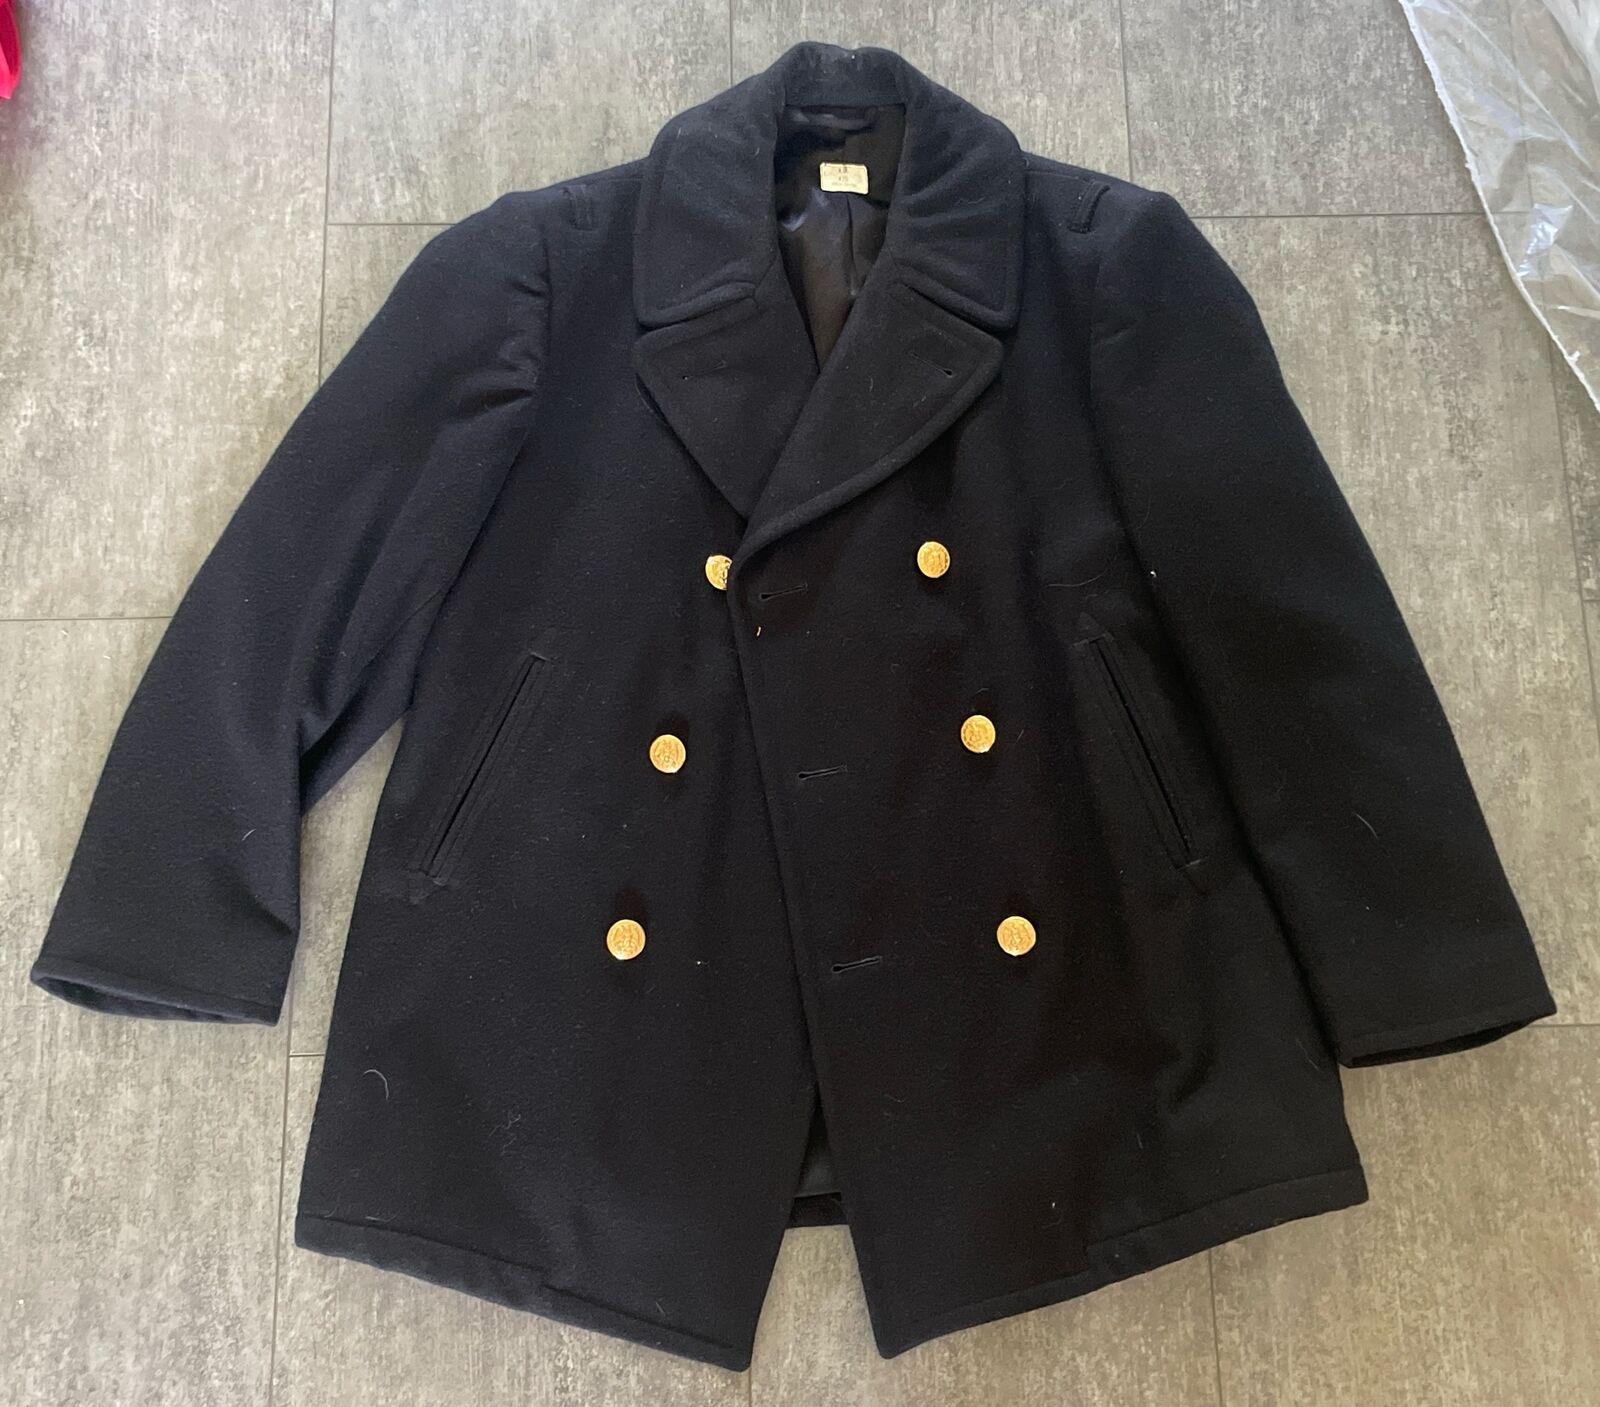 DSCP Quarterdeck Collection US Navy 42S WOOL Pea Overcoat Black 8405-01-154-5792